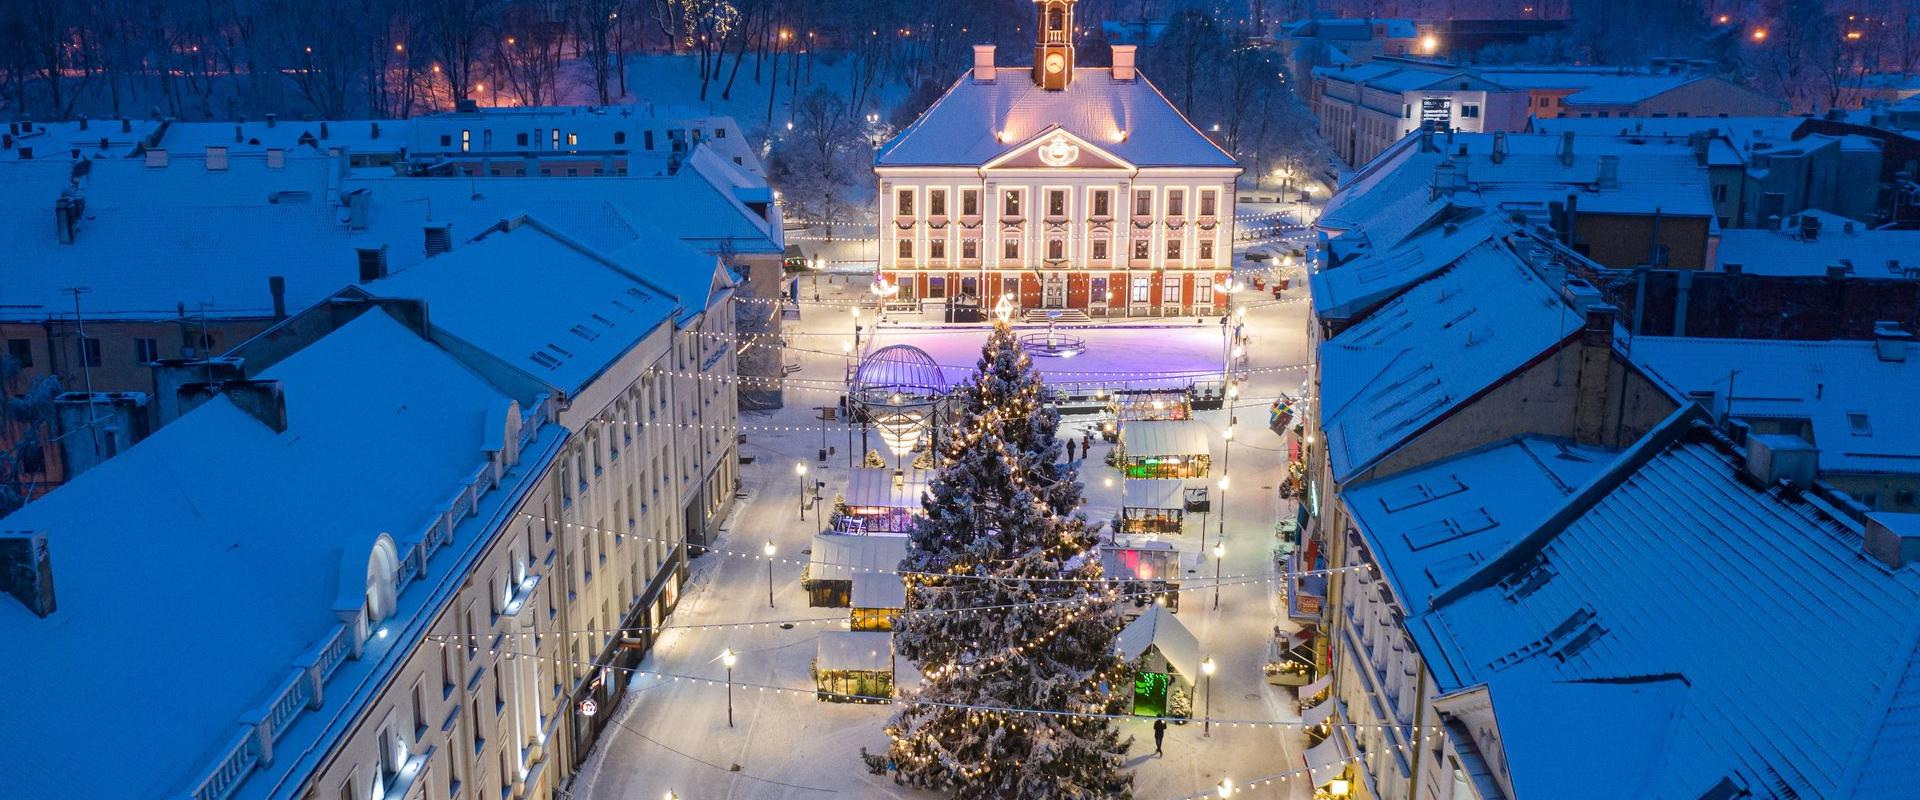 Muinasjutuliselt kaunis jõululinn Tartu ja Tartu Raekoja platsil asuv uisuväljak